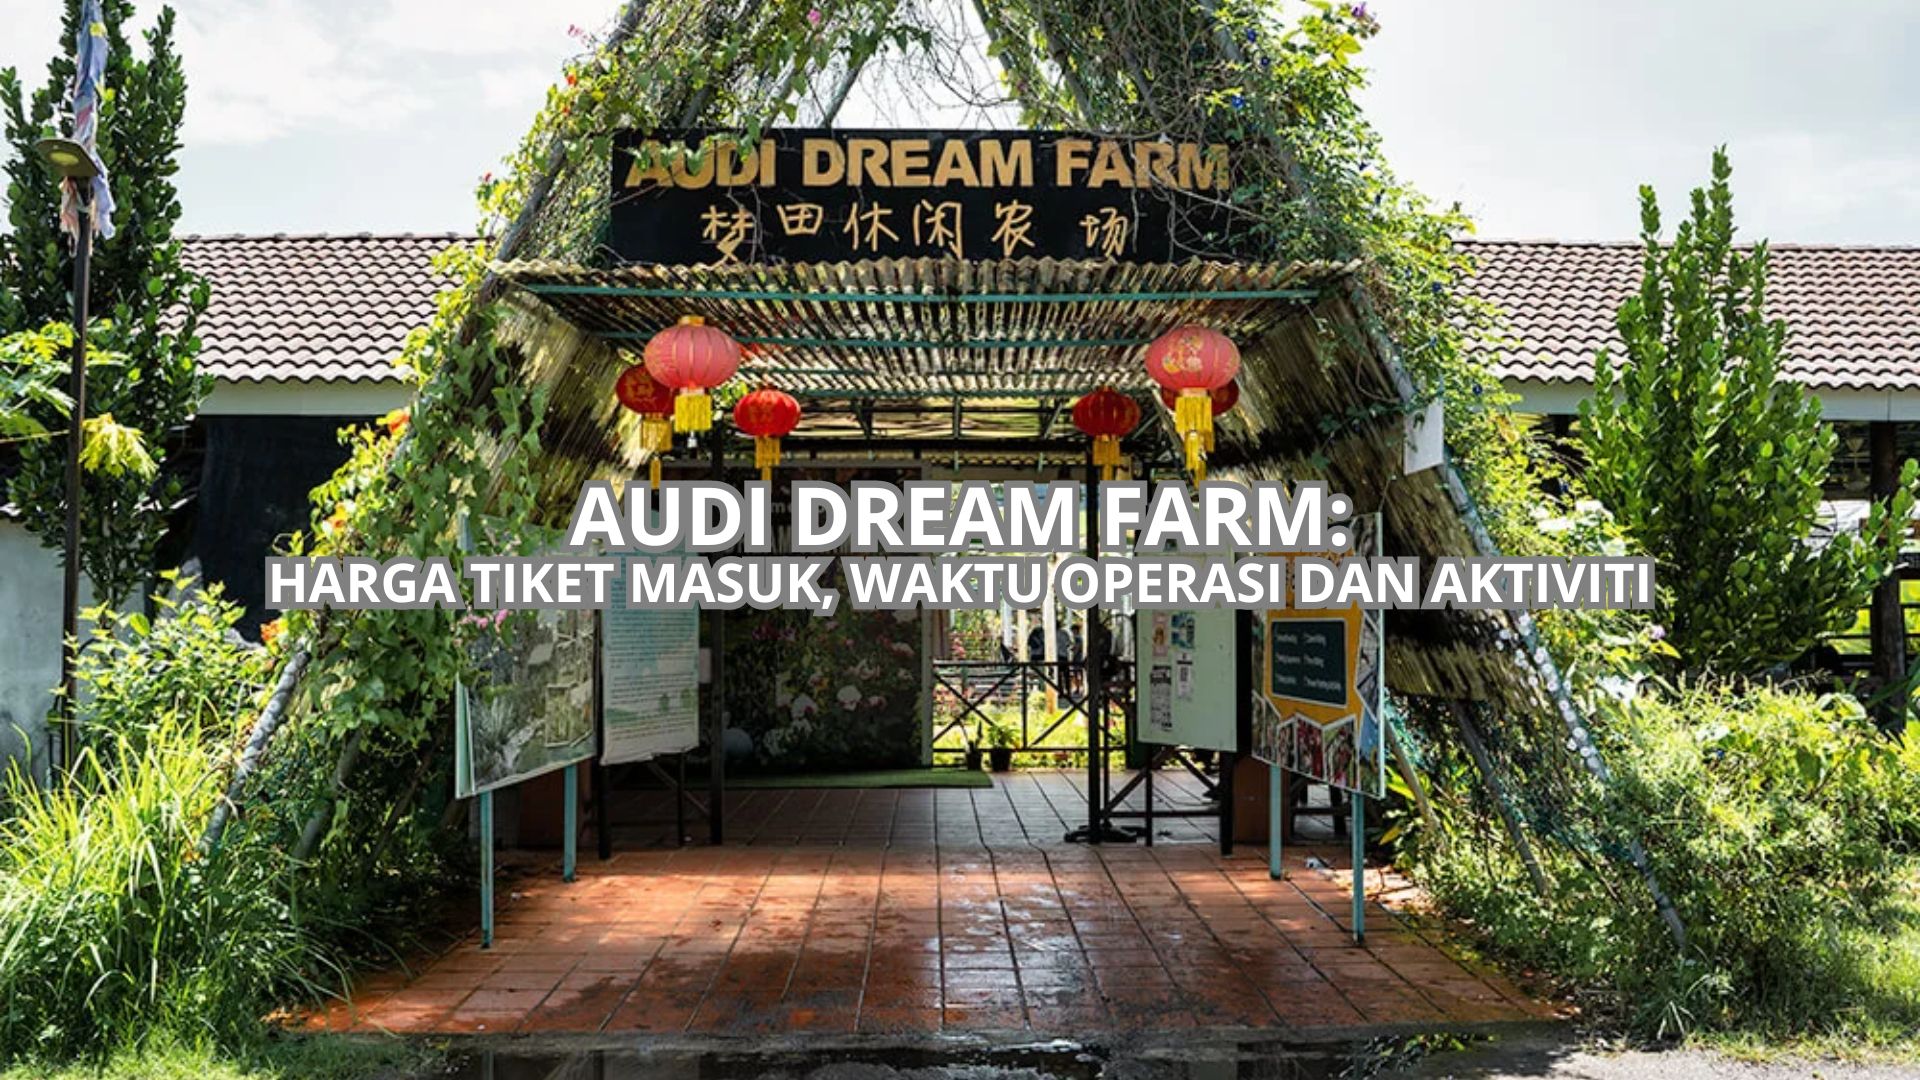 Audi Dream Farm Cover